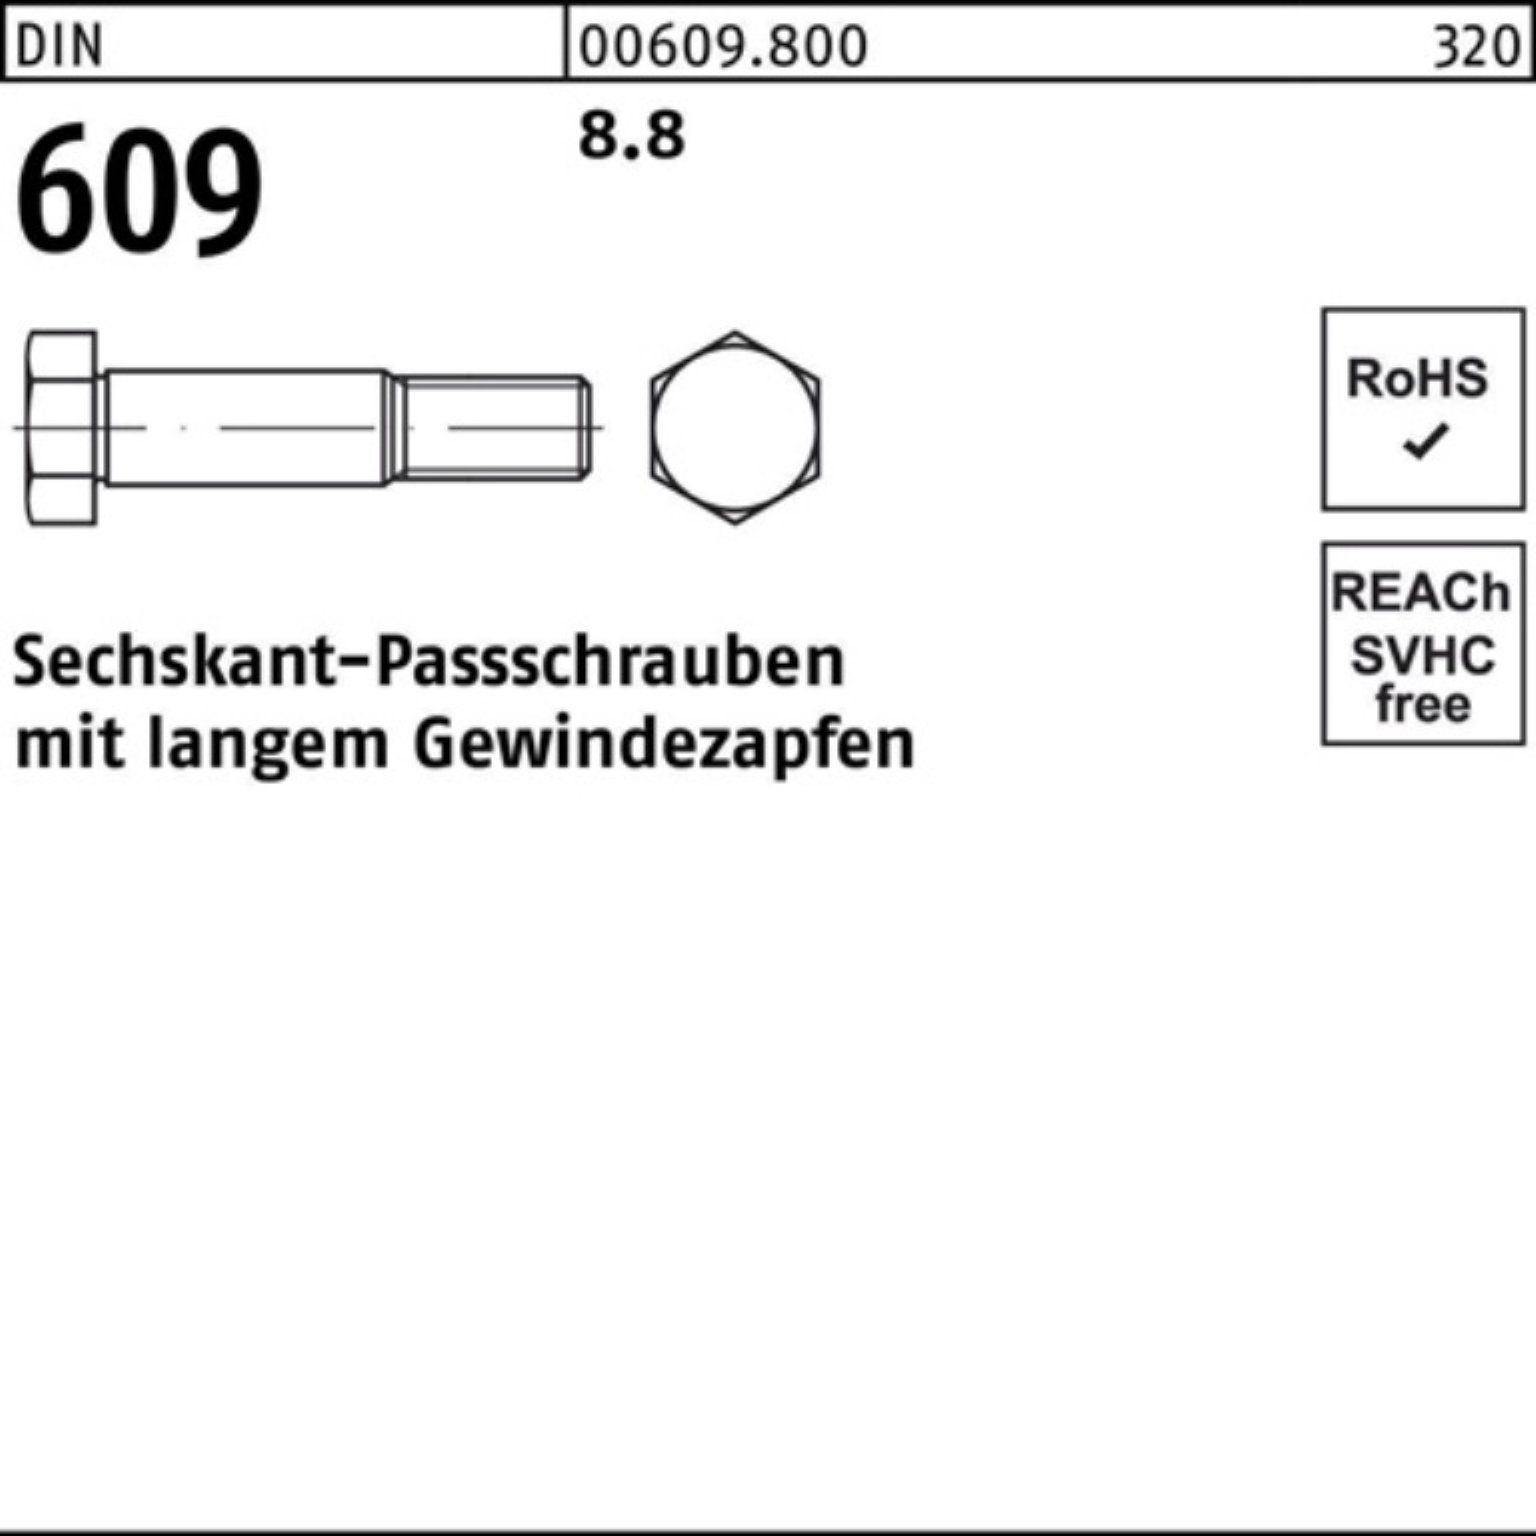 Sechskantpassschraube 100er DIN Schraube Gewindezapfen Reyher Pack 100 609 M10x langem